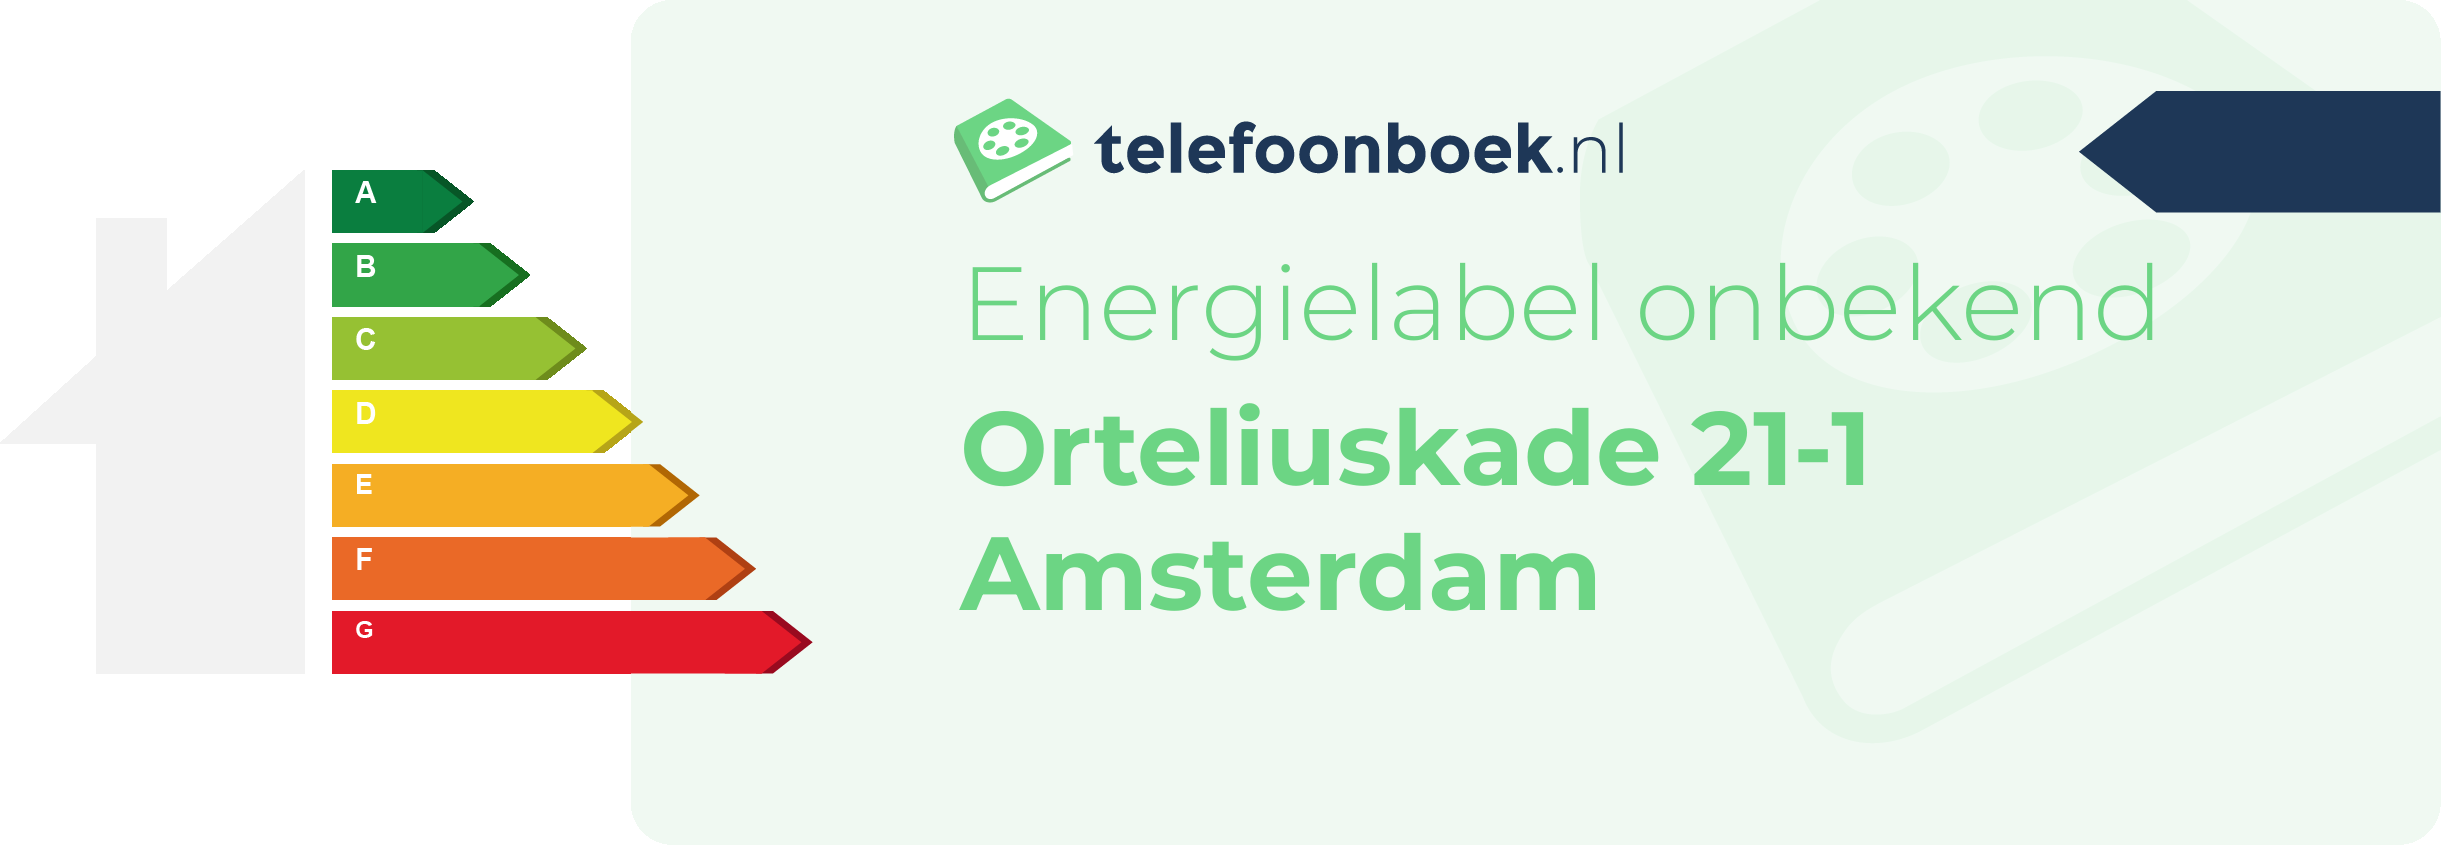 Energielabel Orteliuskade 21-1 Amsterdam